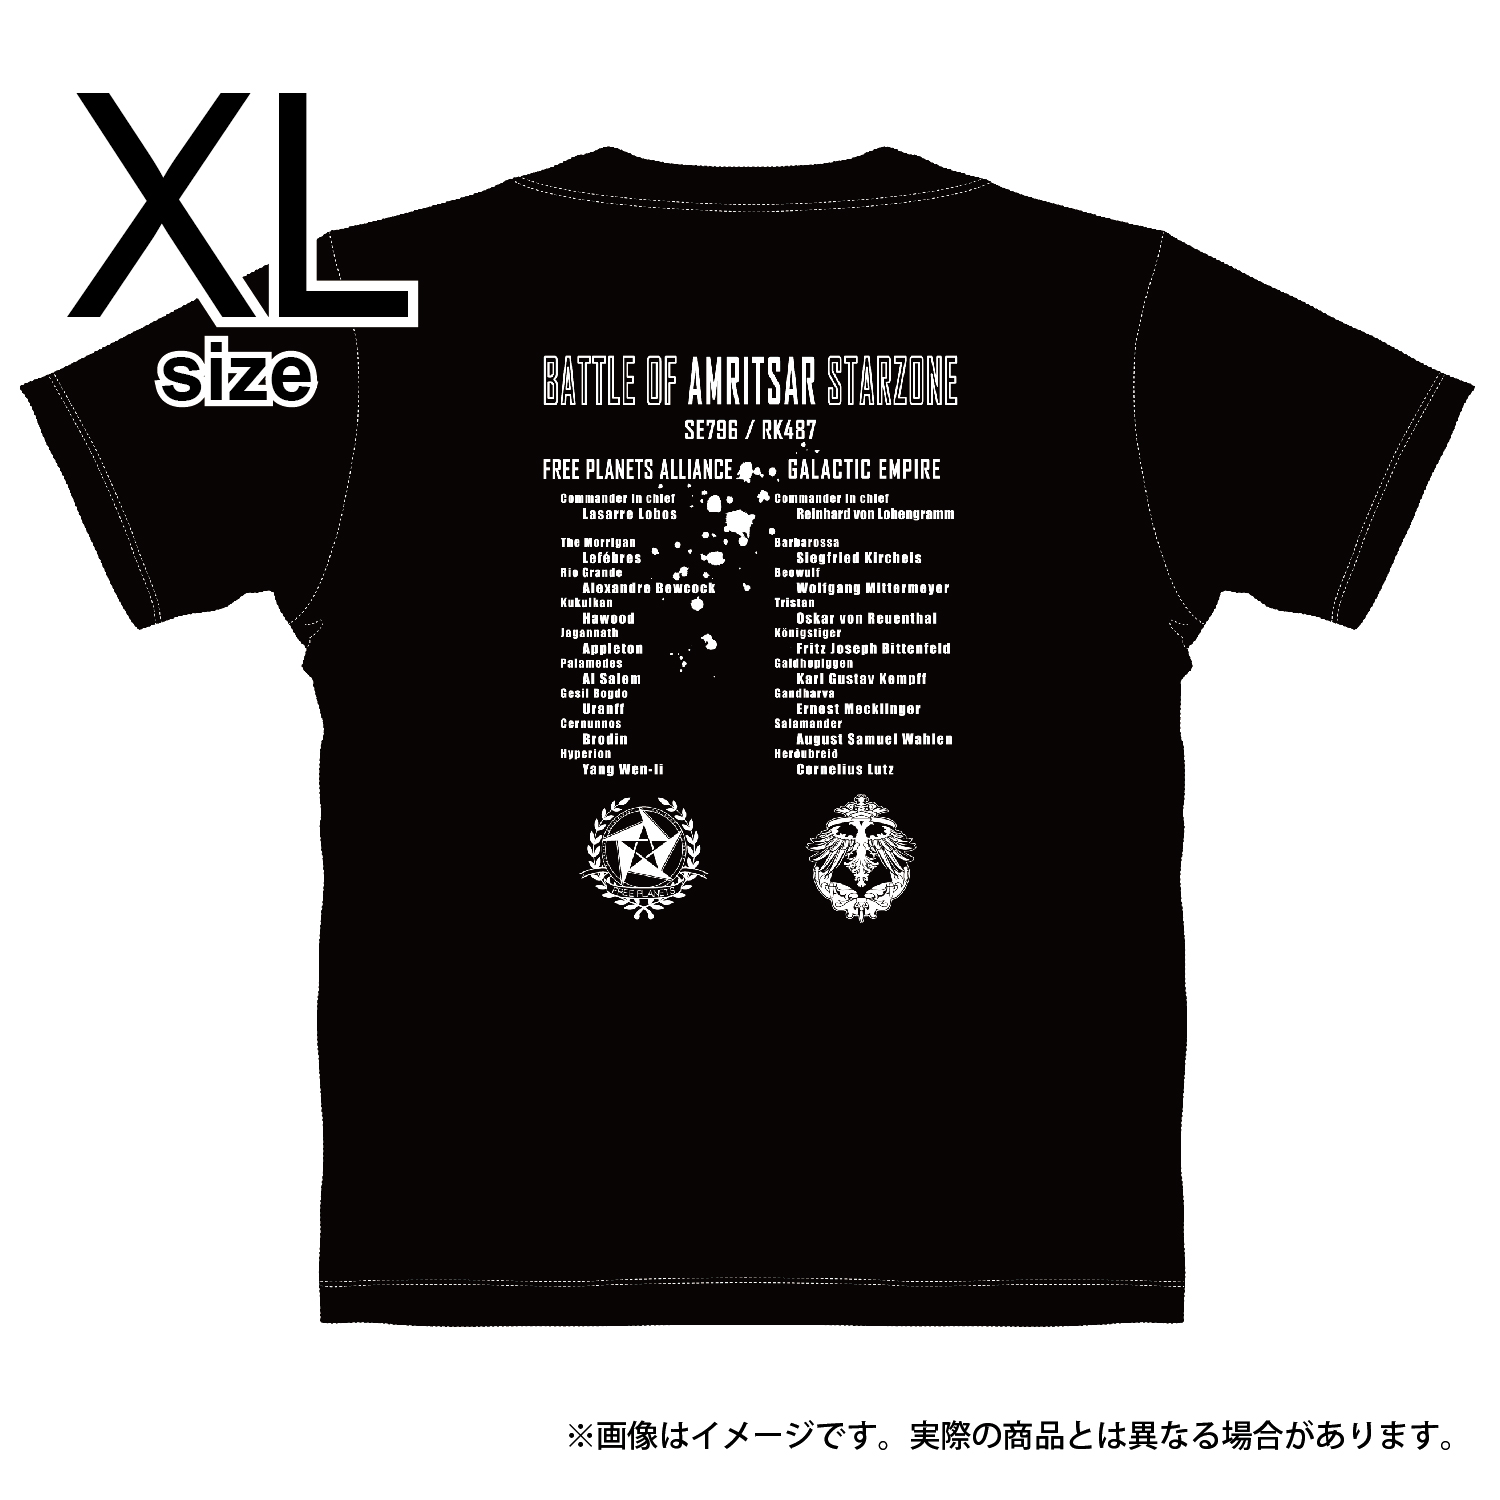 銀河英雄伝説 Die Neue These　Tシャツ　アムリッツァ会戦　Black　XLサイズ